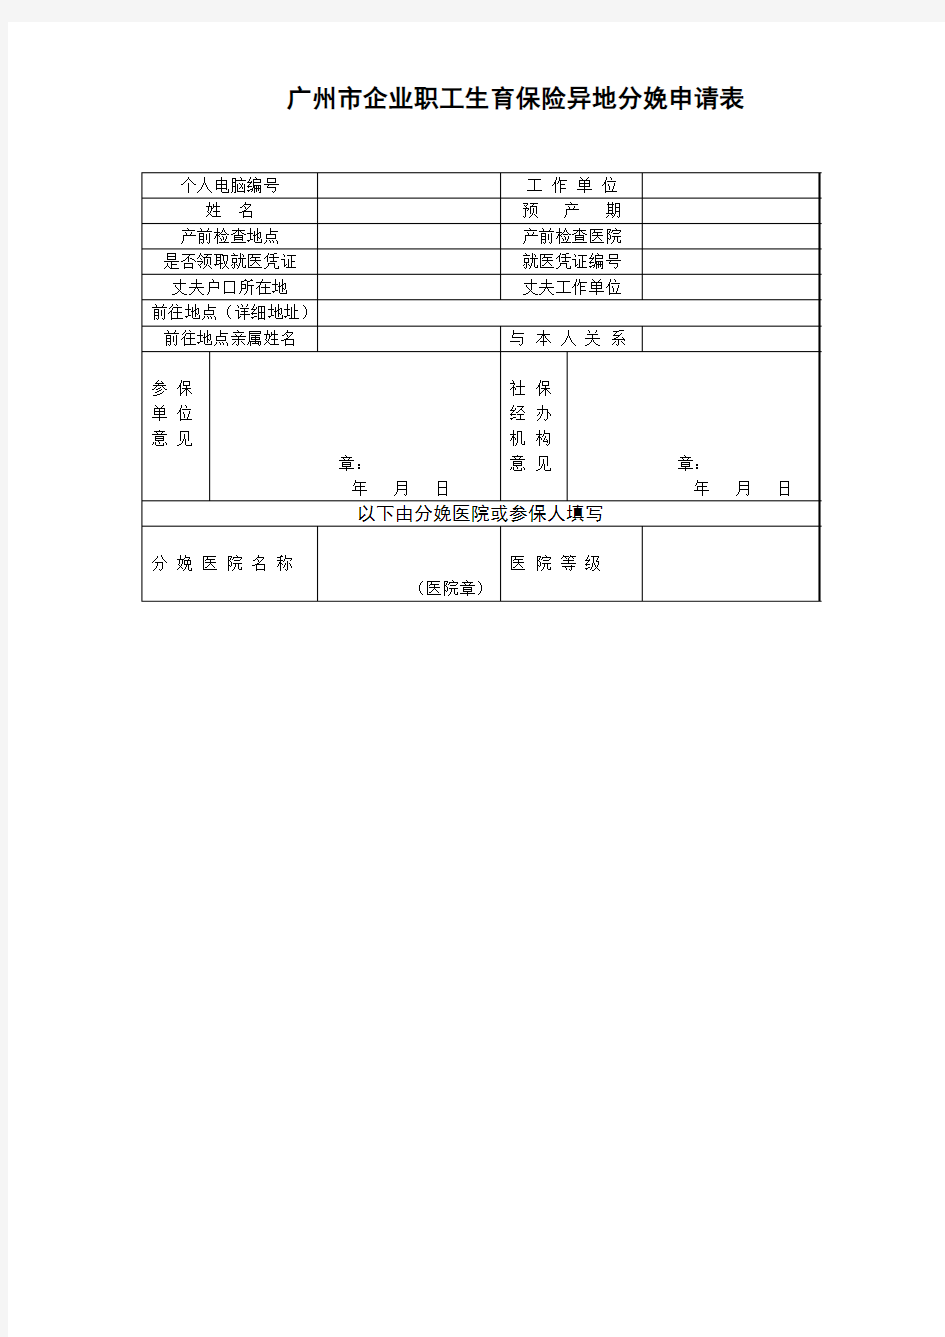 广州市企业职工生育保险异地分娩申请表